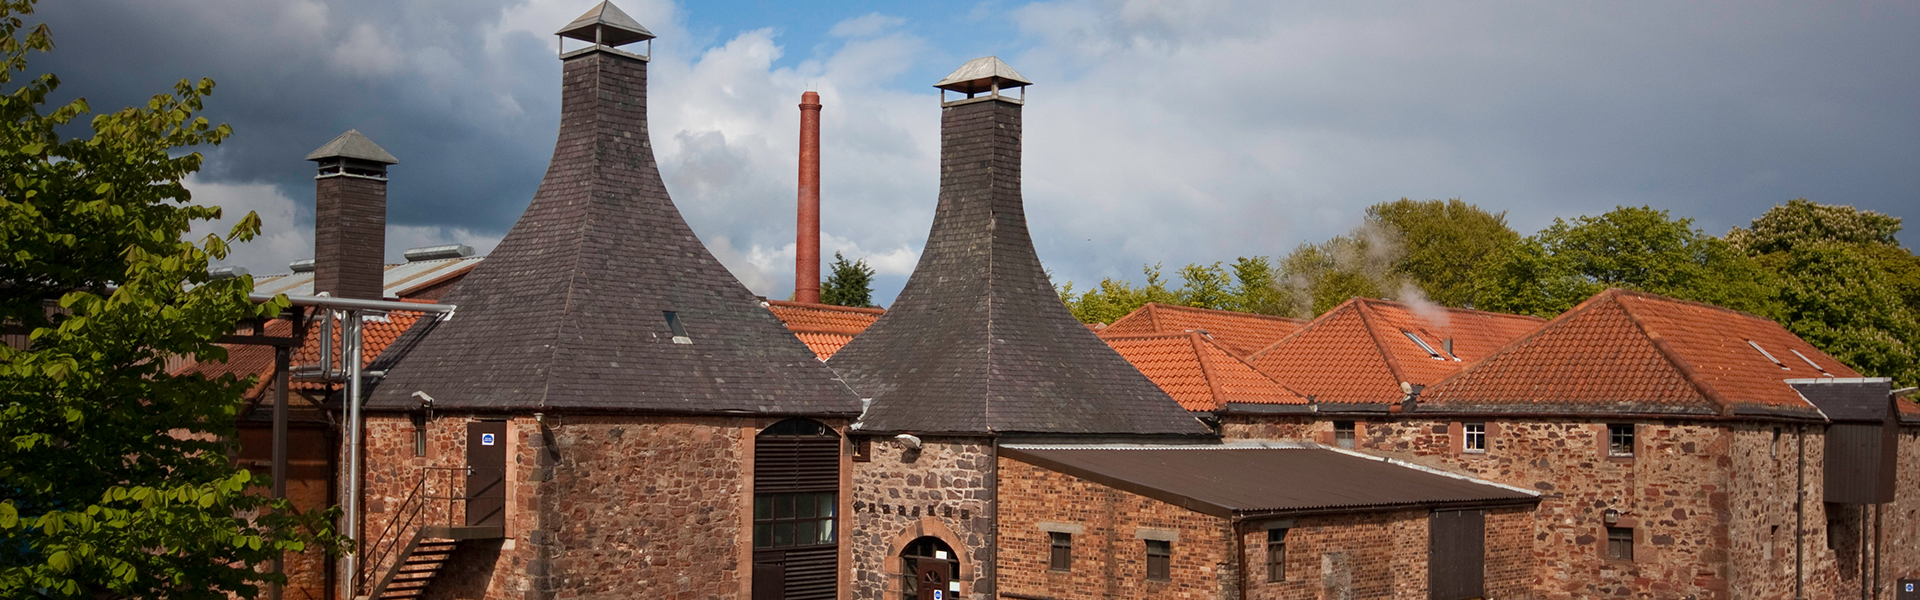 Belhaven Brewery prisas som årets besöksattraktion 2022.